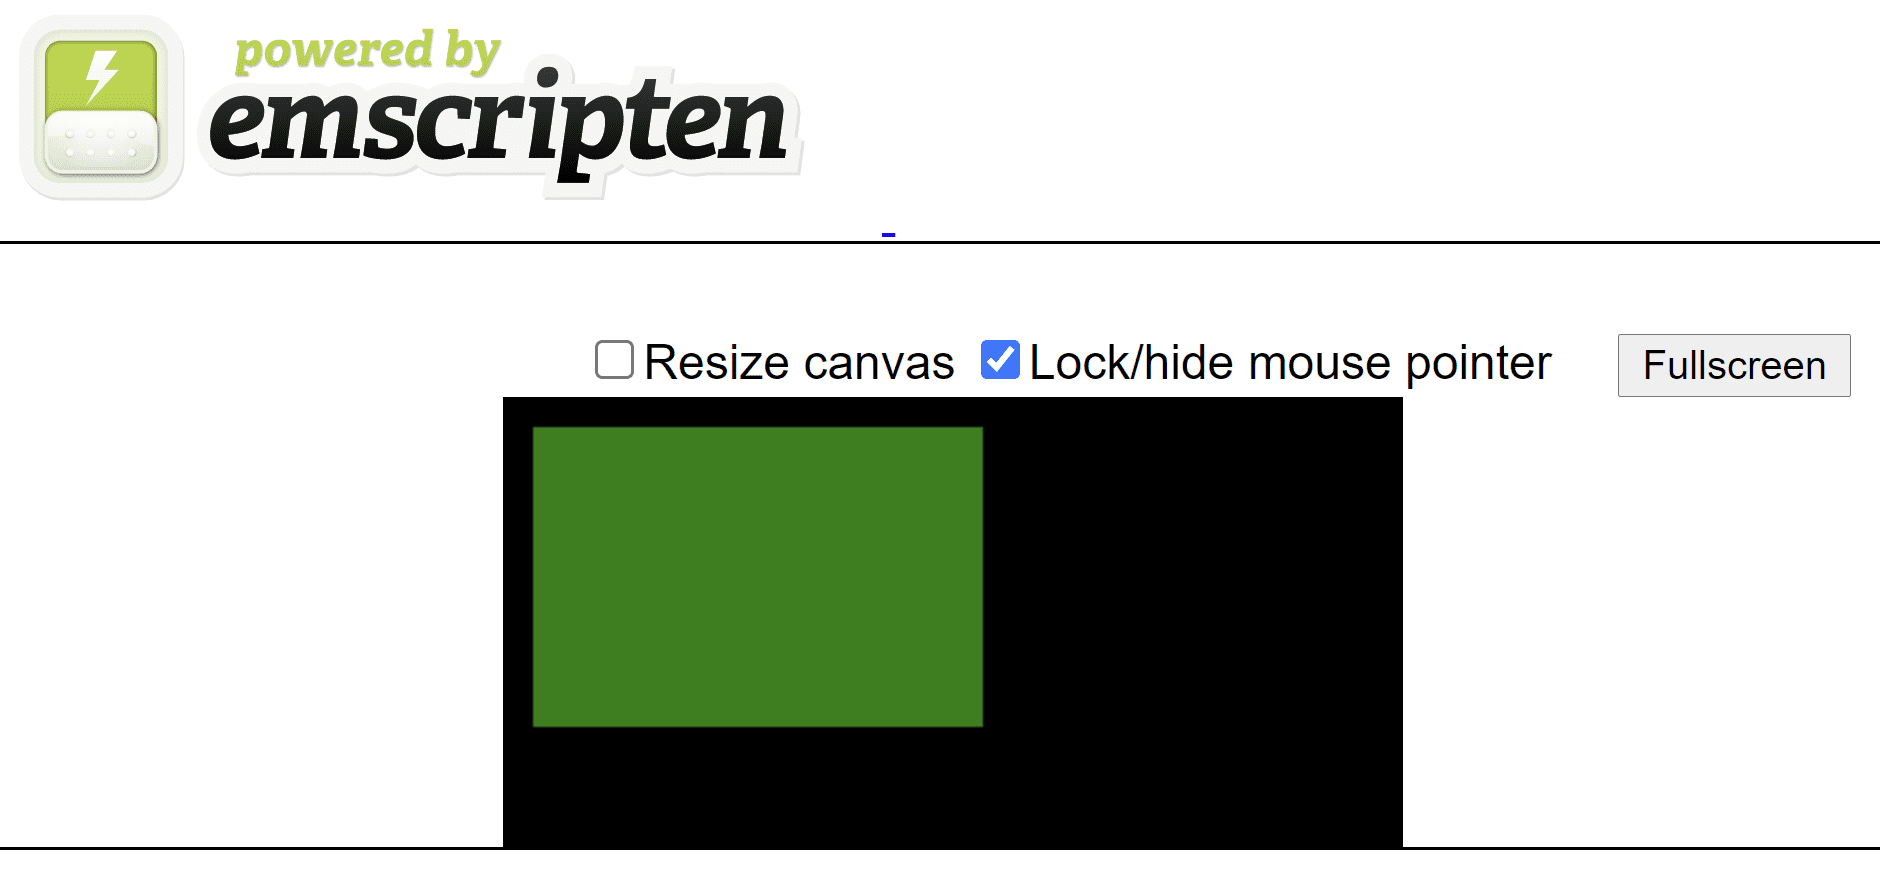 דף HTML שנוצר באמצעות emscript, שמוצג בו מלבן ירוק על קנבס שחור.